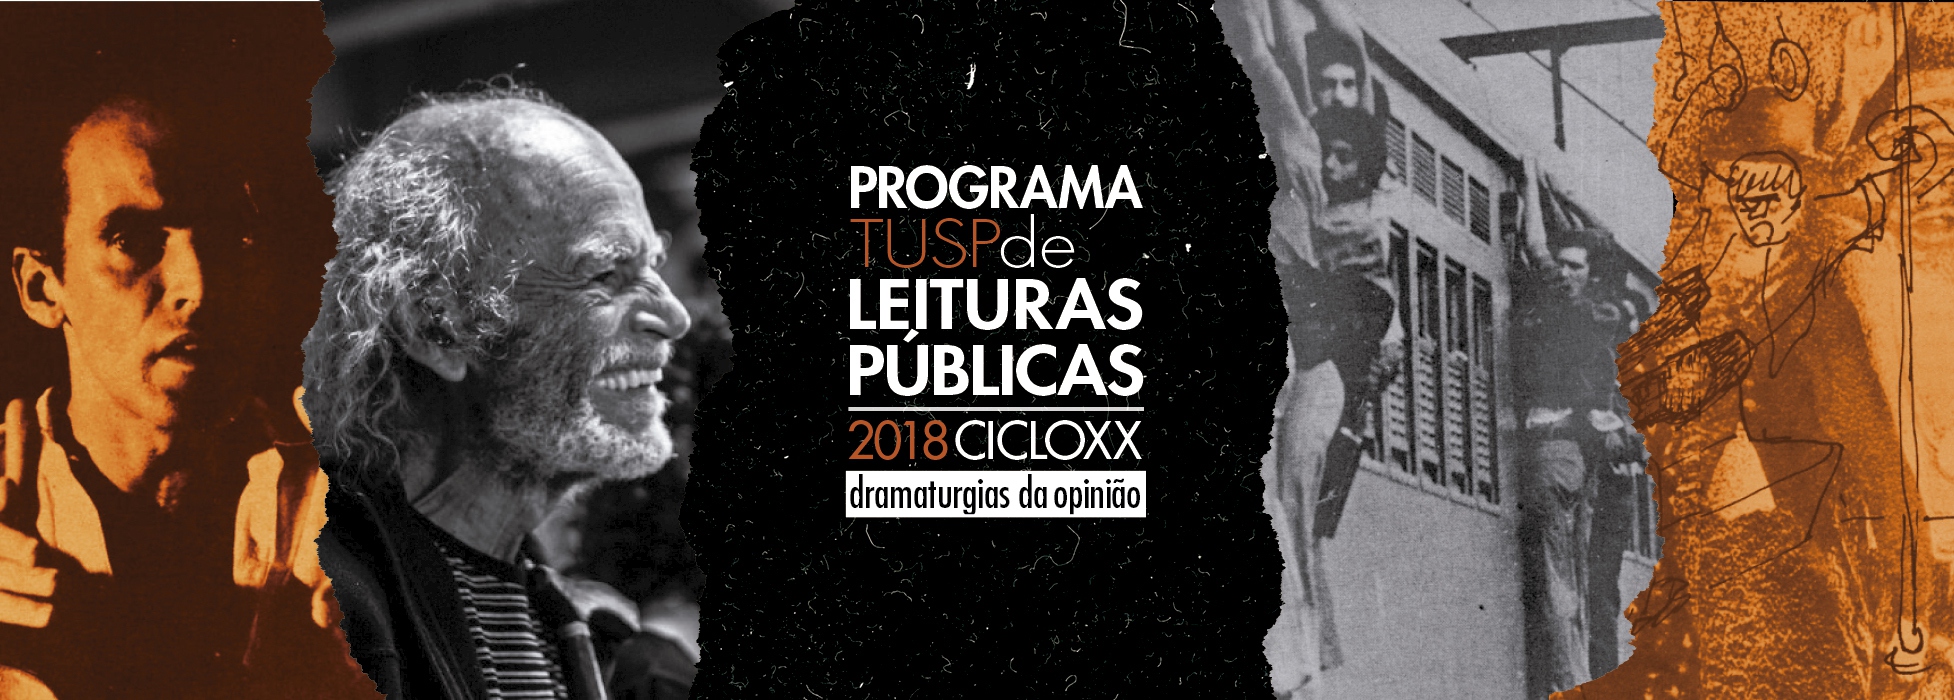 (Português) Teatro da USP homenageia dramaturgo e lança livro em programa de leituras